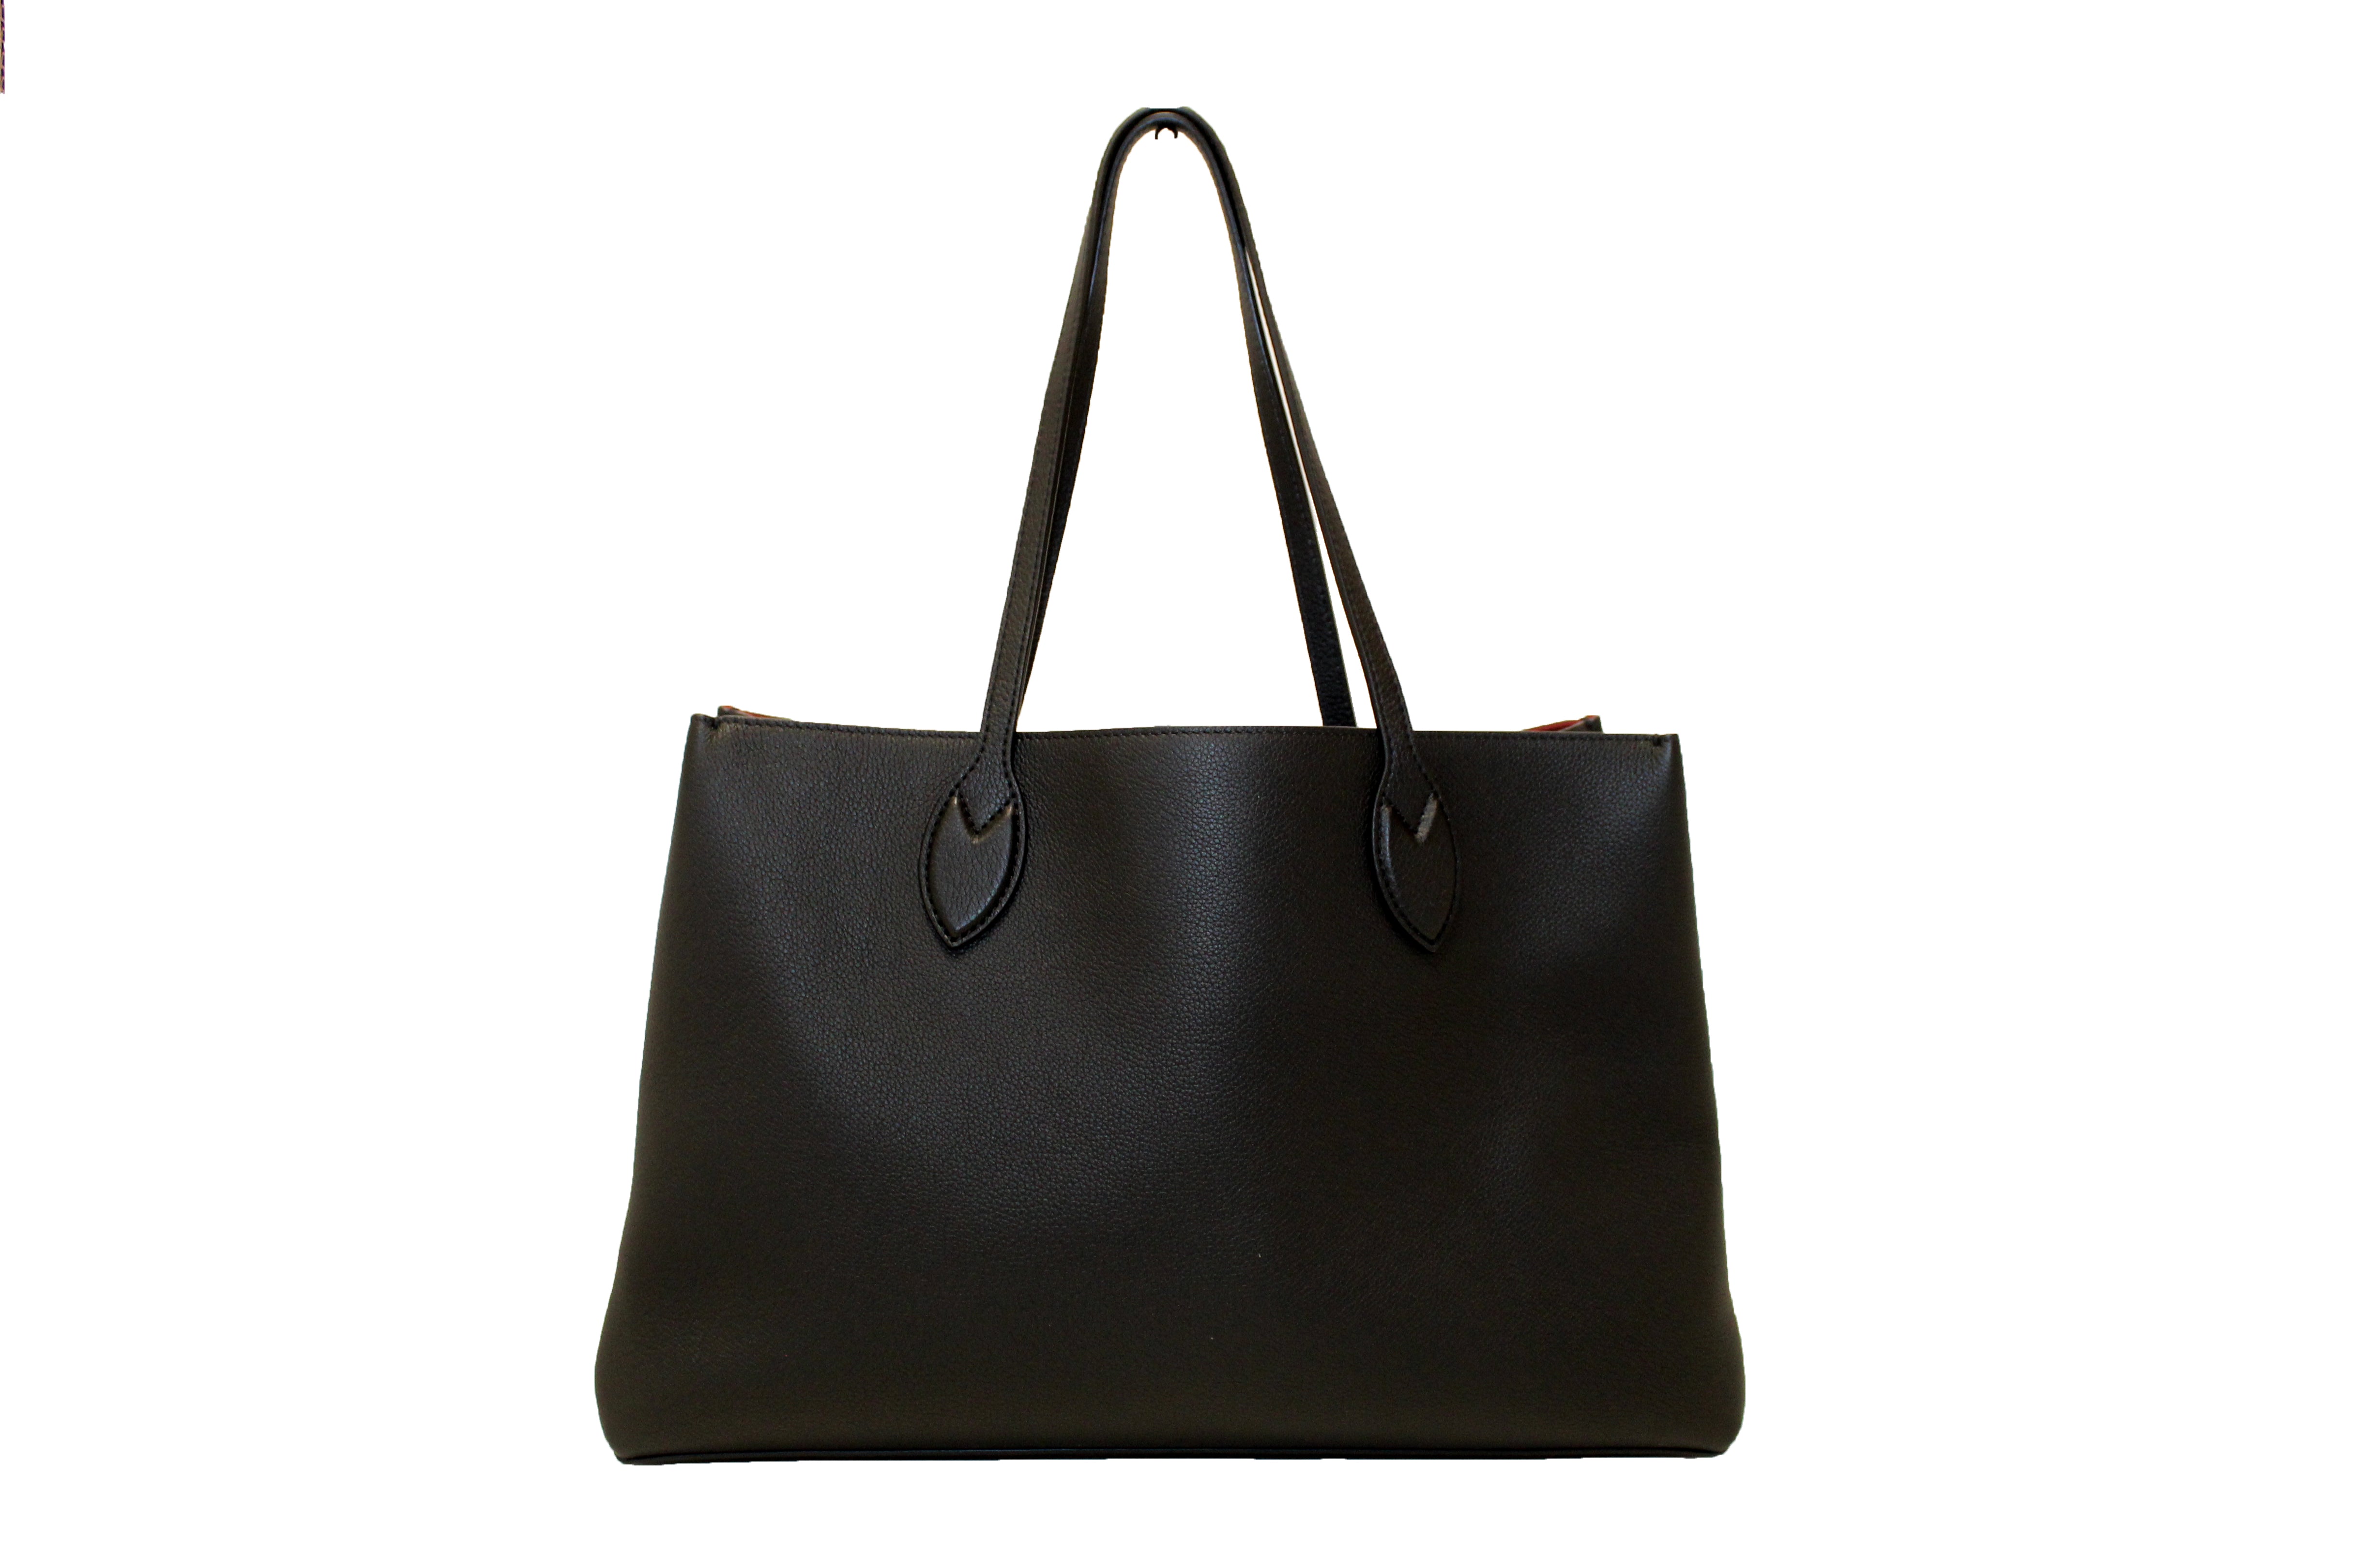 Authentic Louis Vuitton Black Calf Leather Lockme Shopper Tote Bag